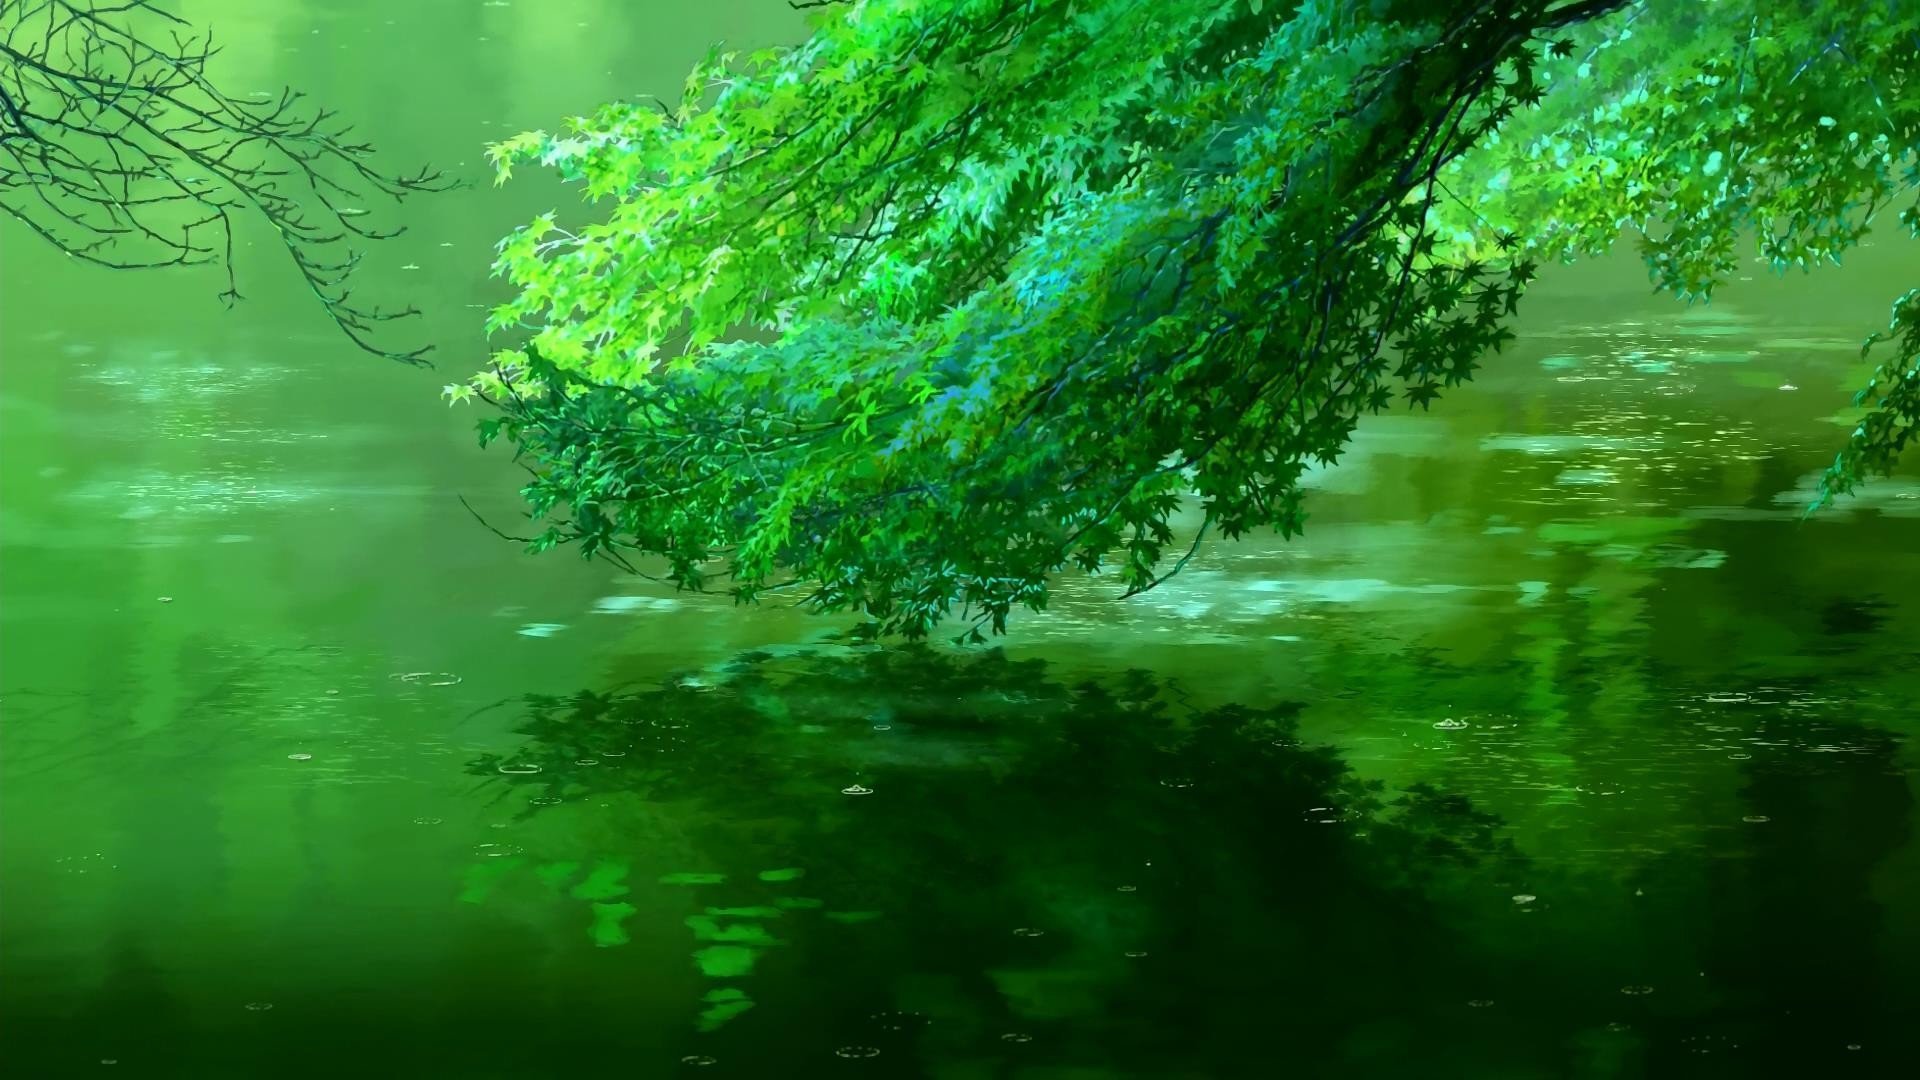 Дождь живая природа. Сад изящных слов" Макото Синкая. Пейзаж в зеленых тонах.